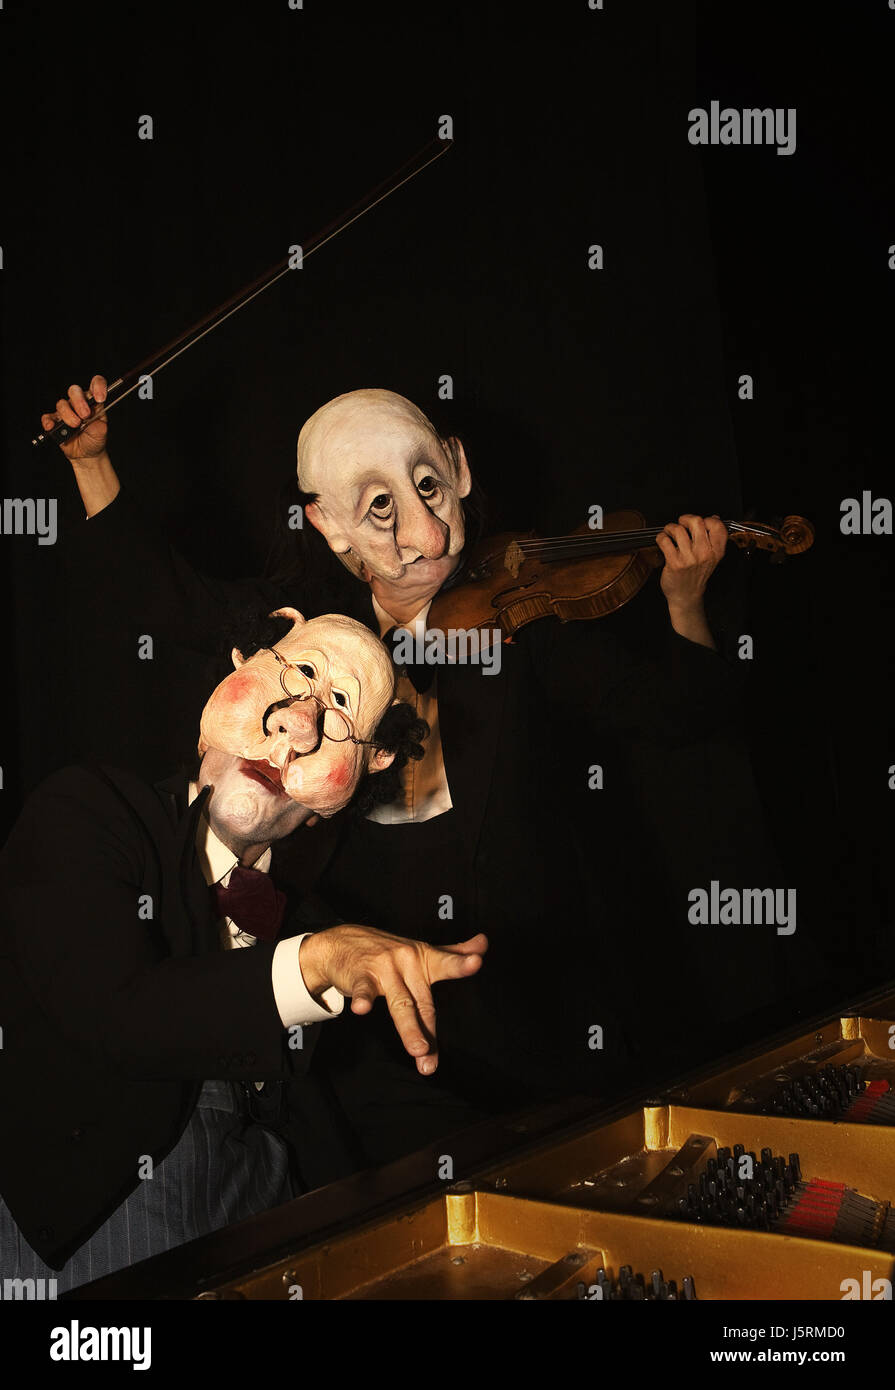 witzige Masken Kostüme lustig Duett Pianist Geigen Performer Maske zwei  Stockfotografie - Alamy